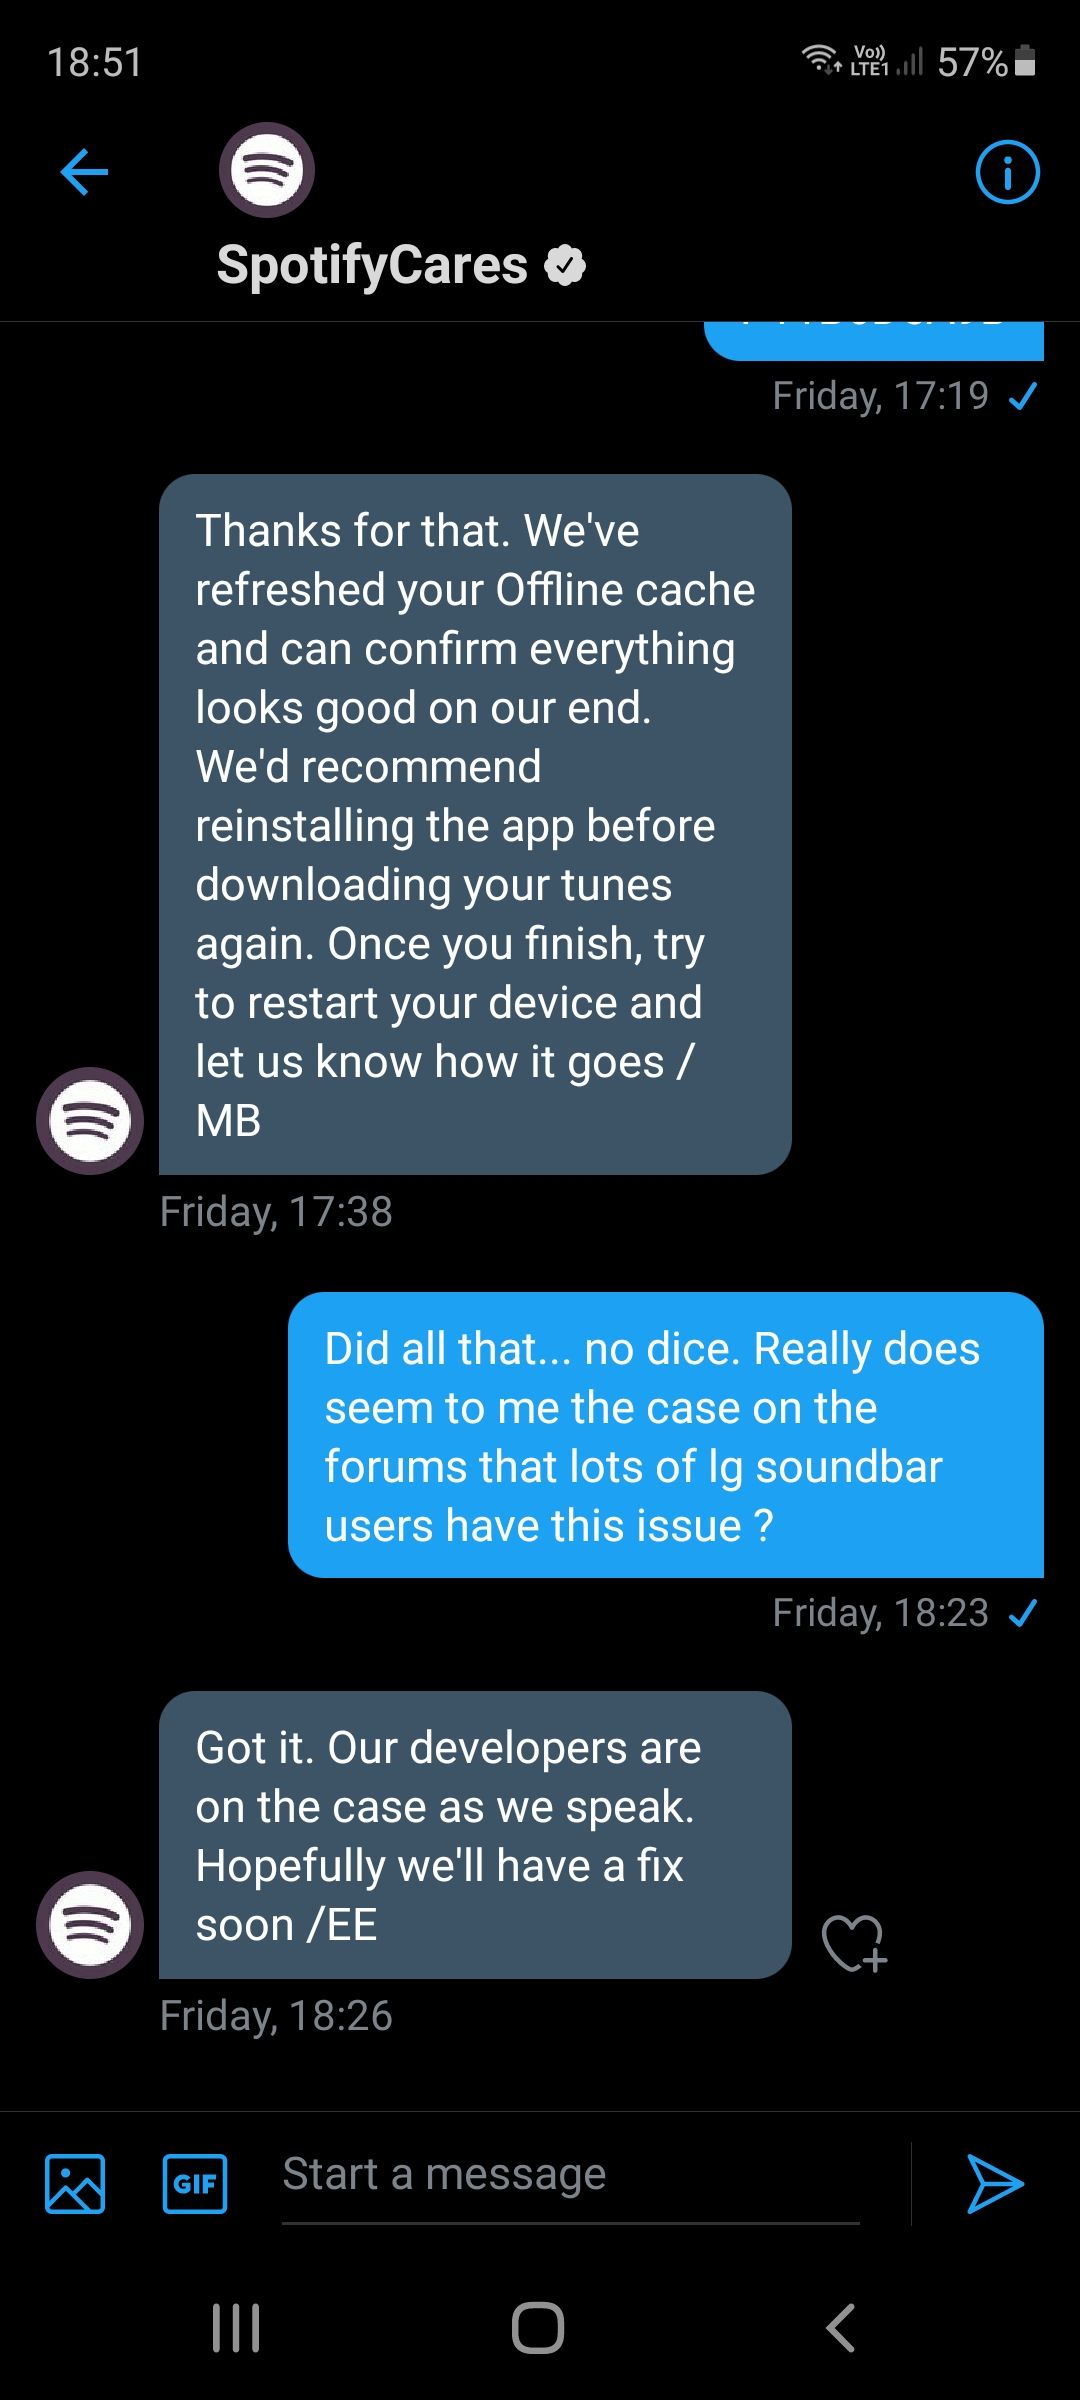 not with LG Soundbar - Page 2 - Spotify Community